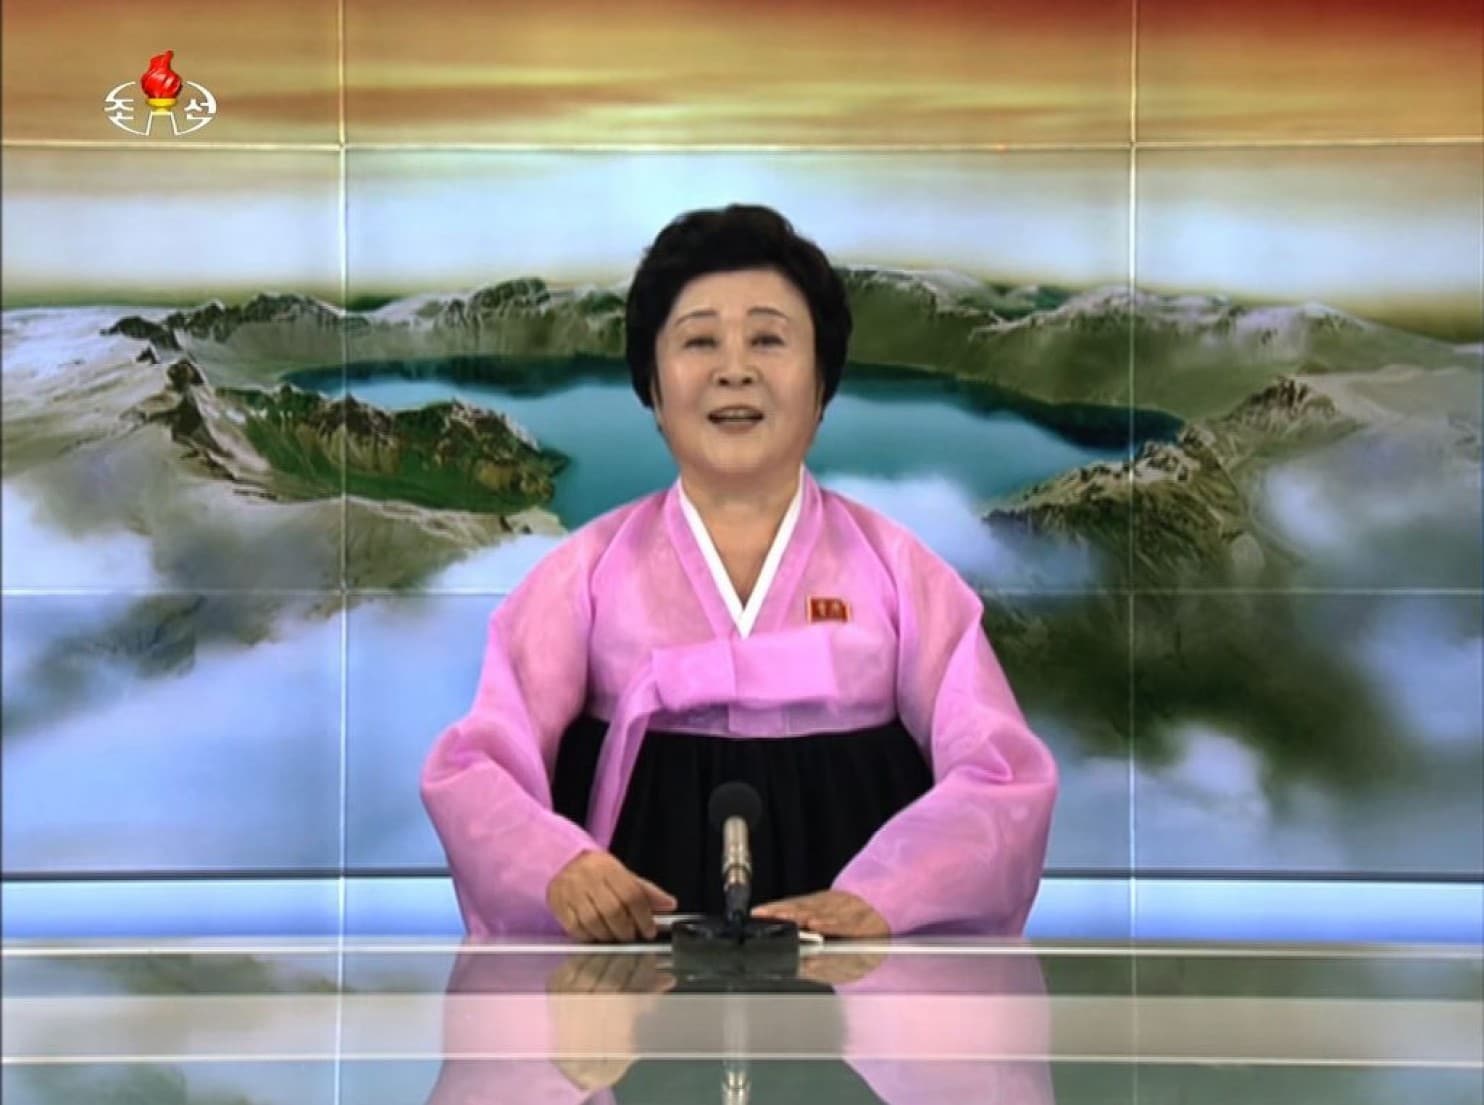 北朝鮮のニュース背景と 君の名は のあの景色が完全に一致 話題の画像プラス